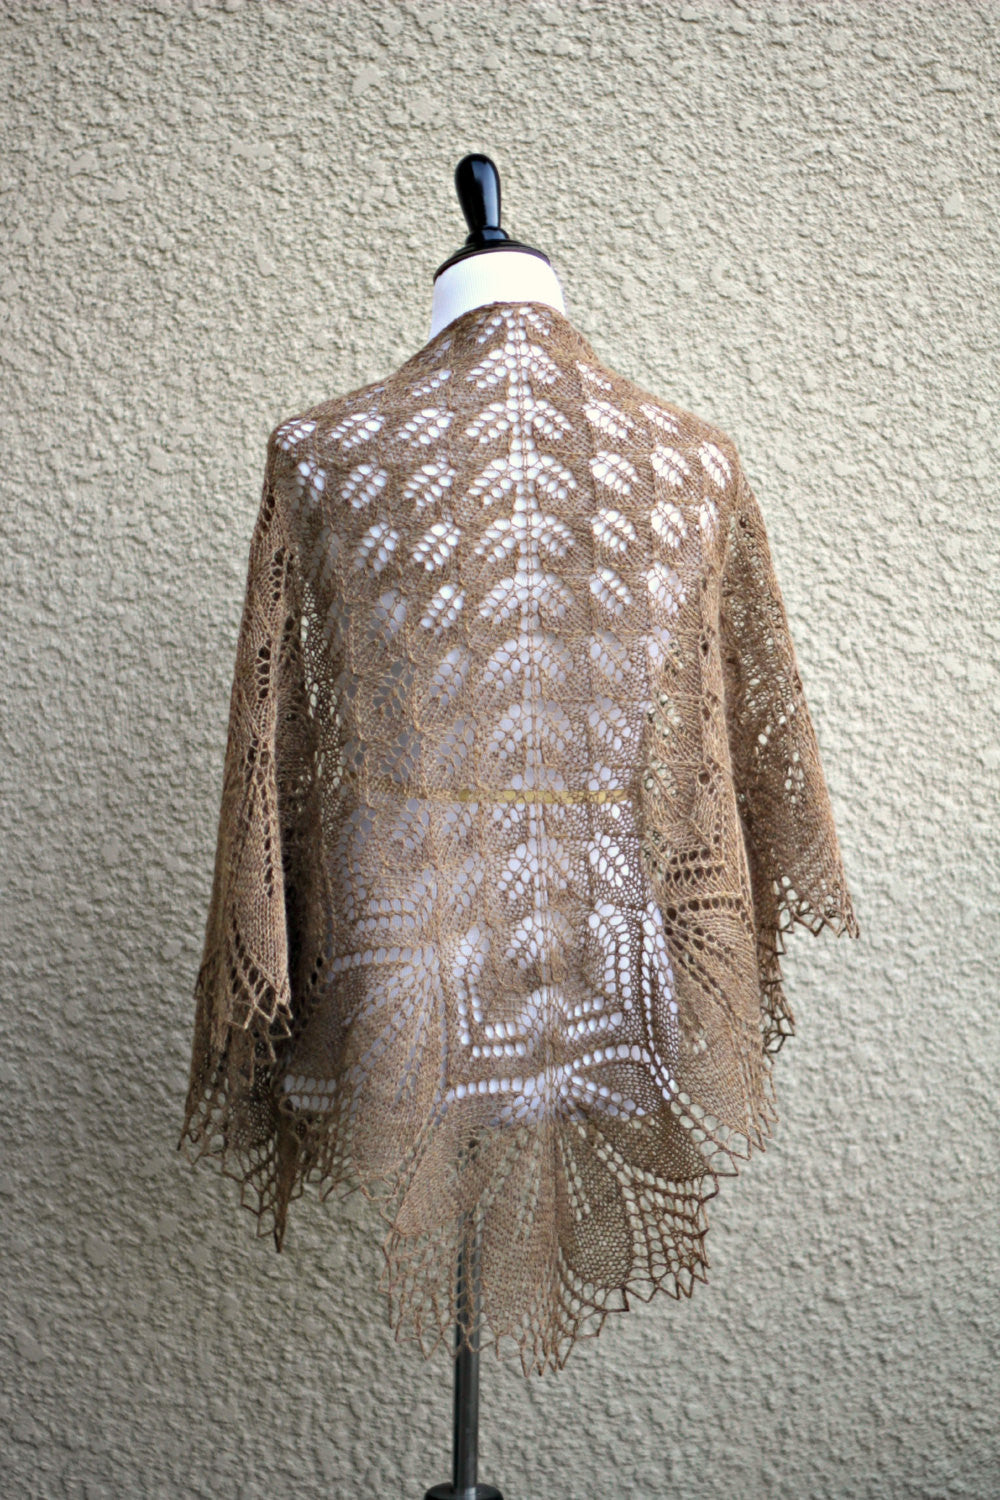 Knit beige lace shawl